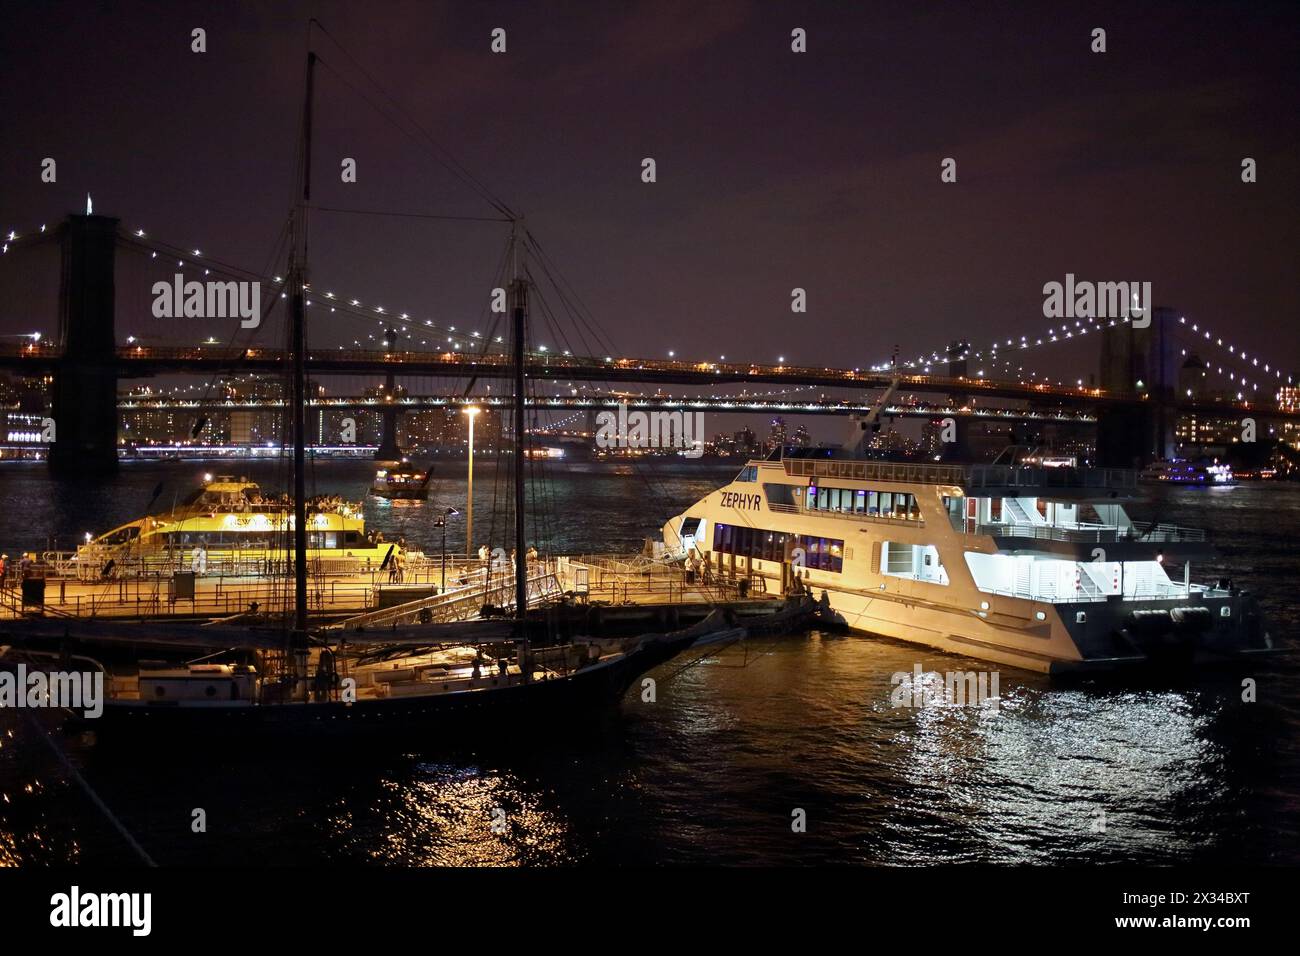 NEW YORK, États-Unis - 07 septembre 2014 : jetée avec bateau et bateau-taxi devant le lumineux Night Bridge à New York Banque D'Images